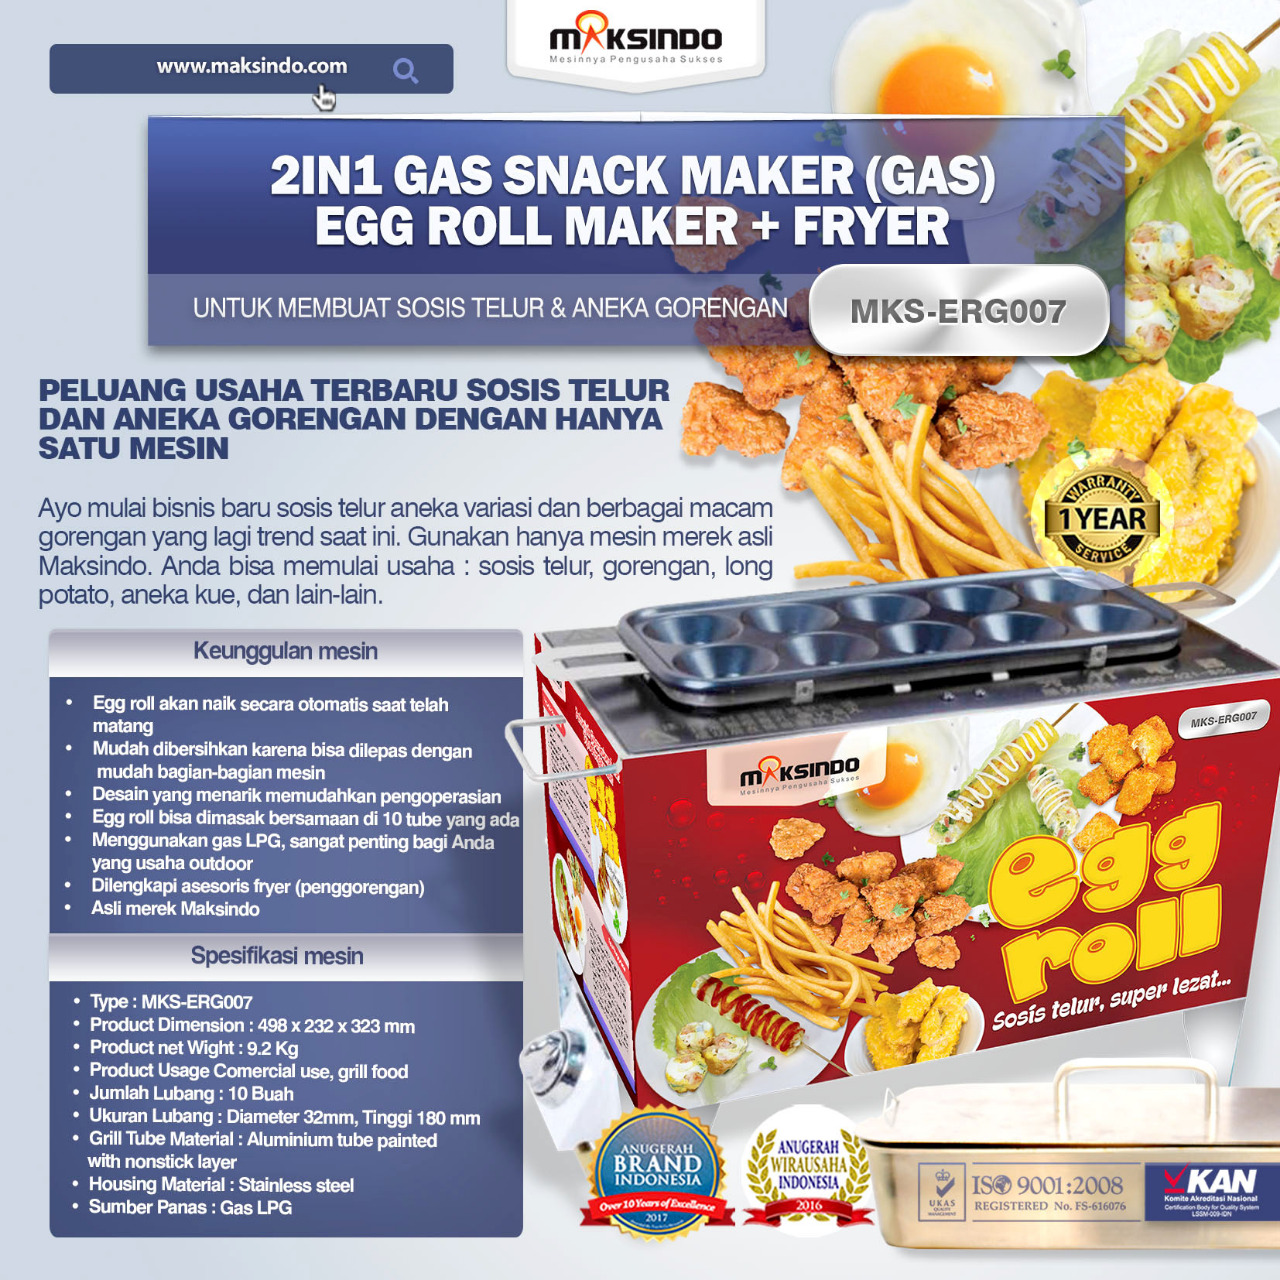 Jual Mesin Egg Roll Gas 2in1 Plus Fryer ERG007 di Pekanbaru